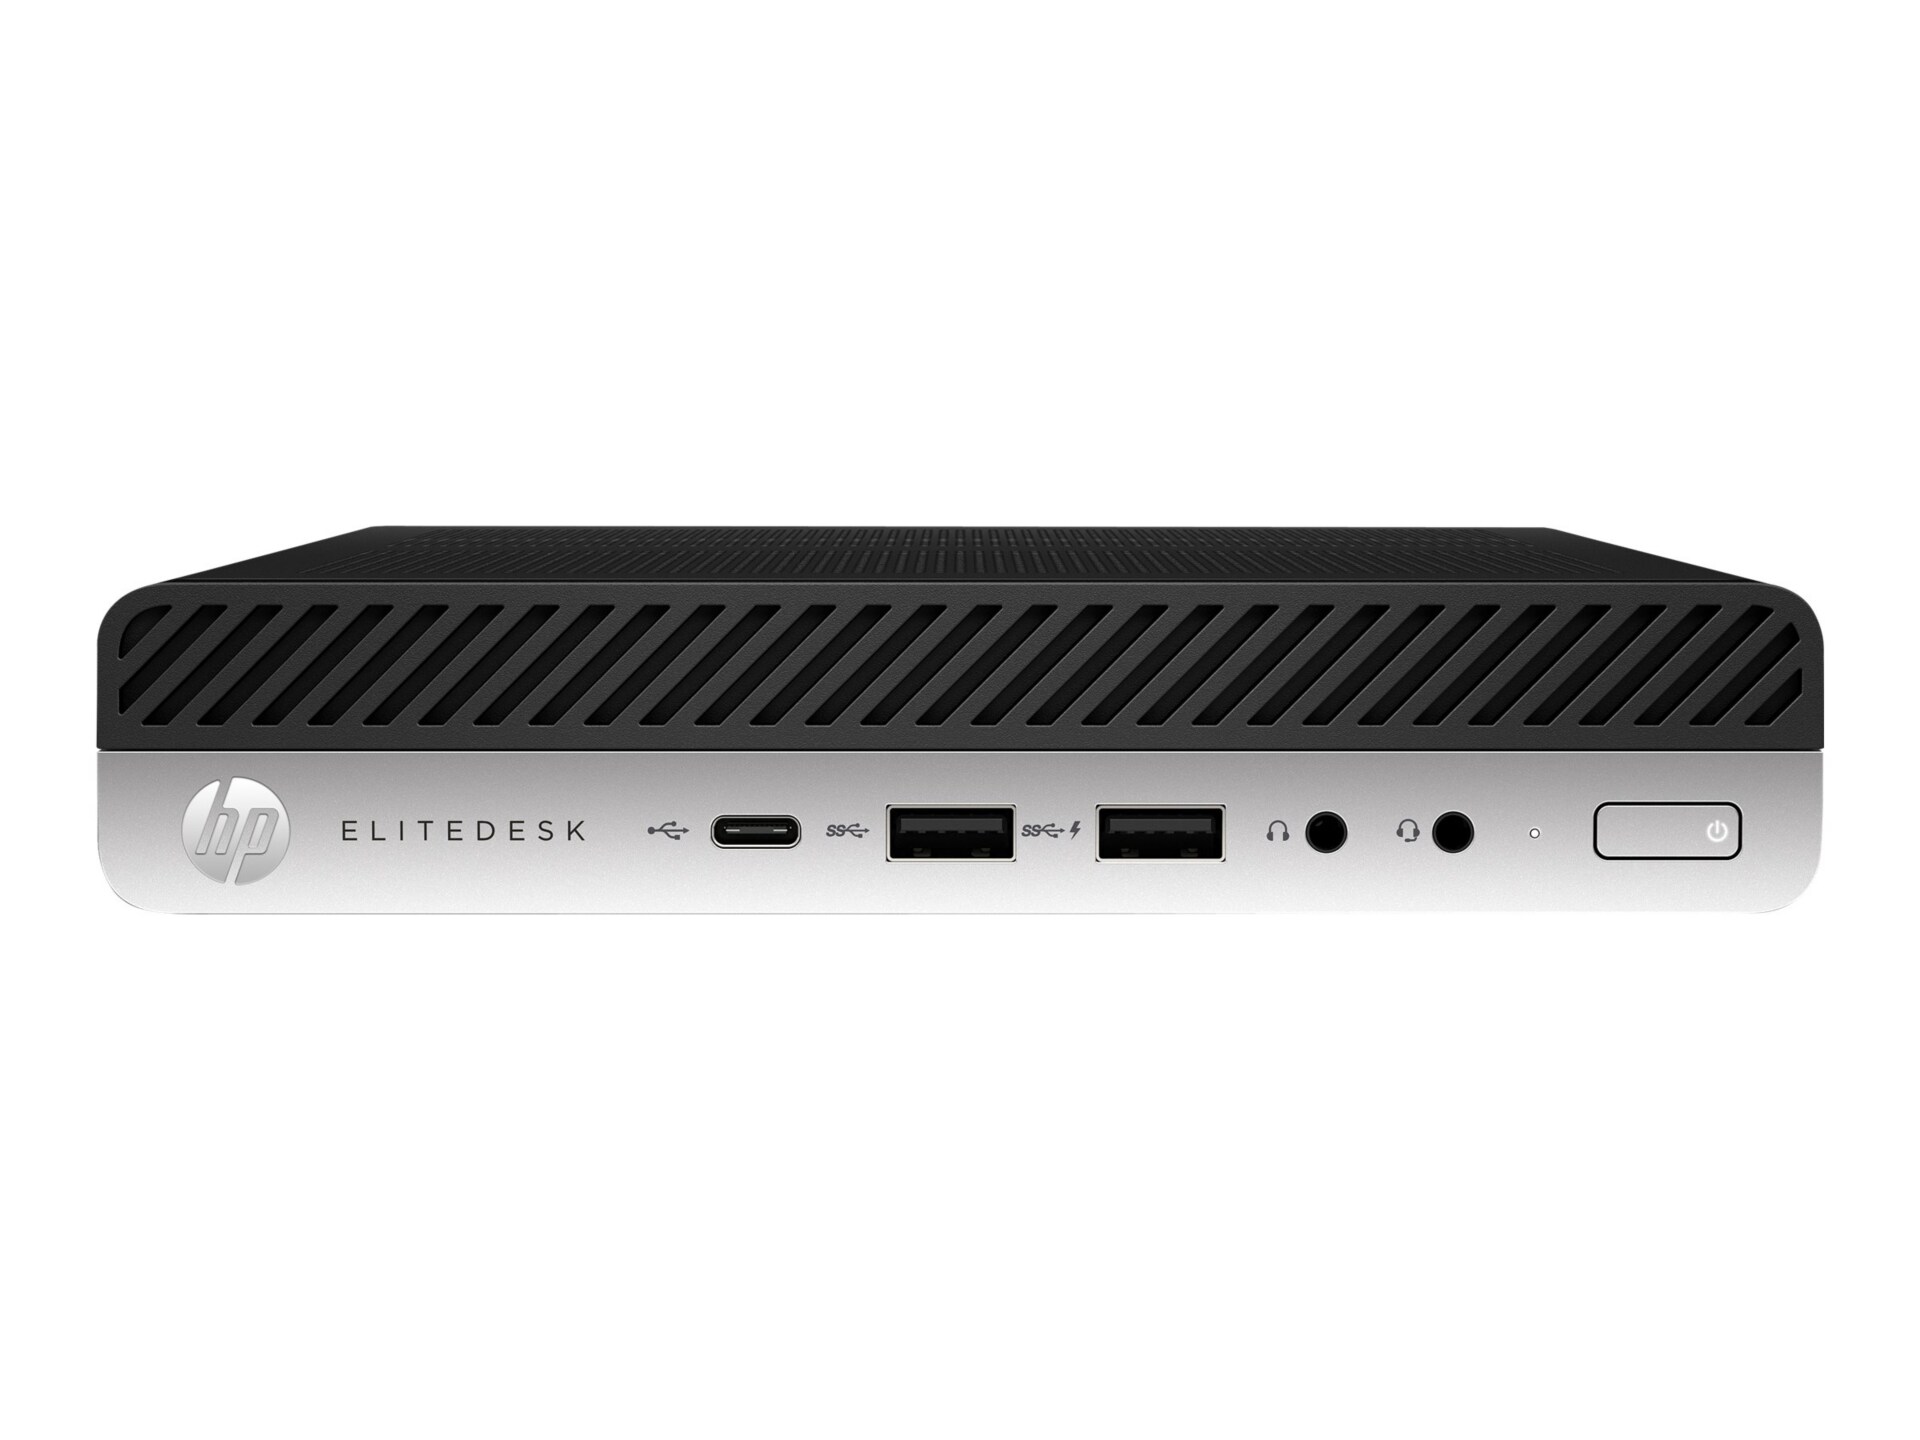 HP EliteDesk 705 G5 - mini desktop - Ryzen 3 Pro 3200G 3.6 GHz - 8 GB - SSD